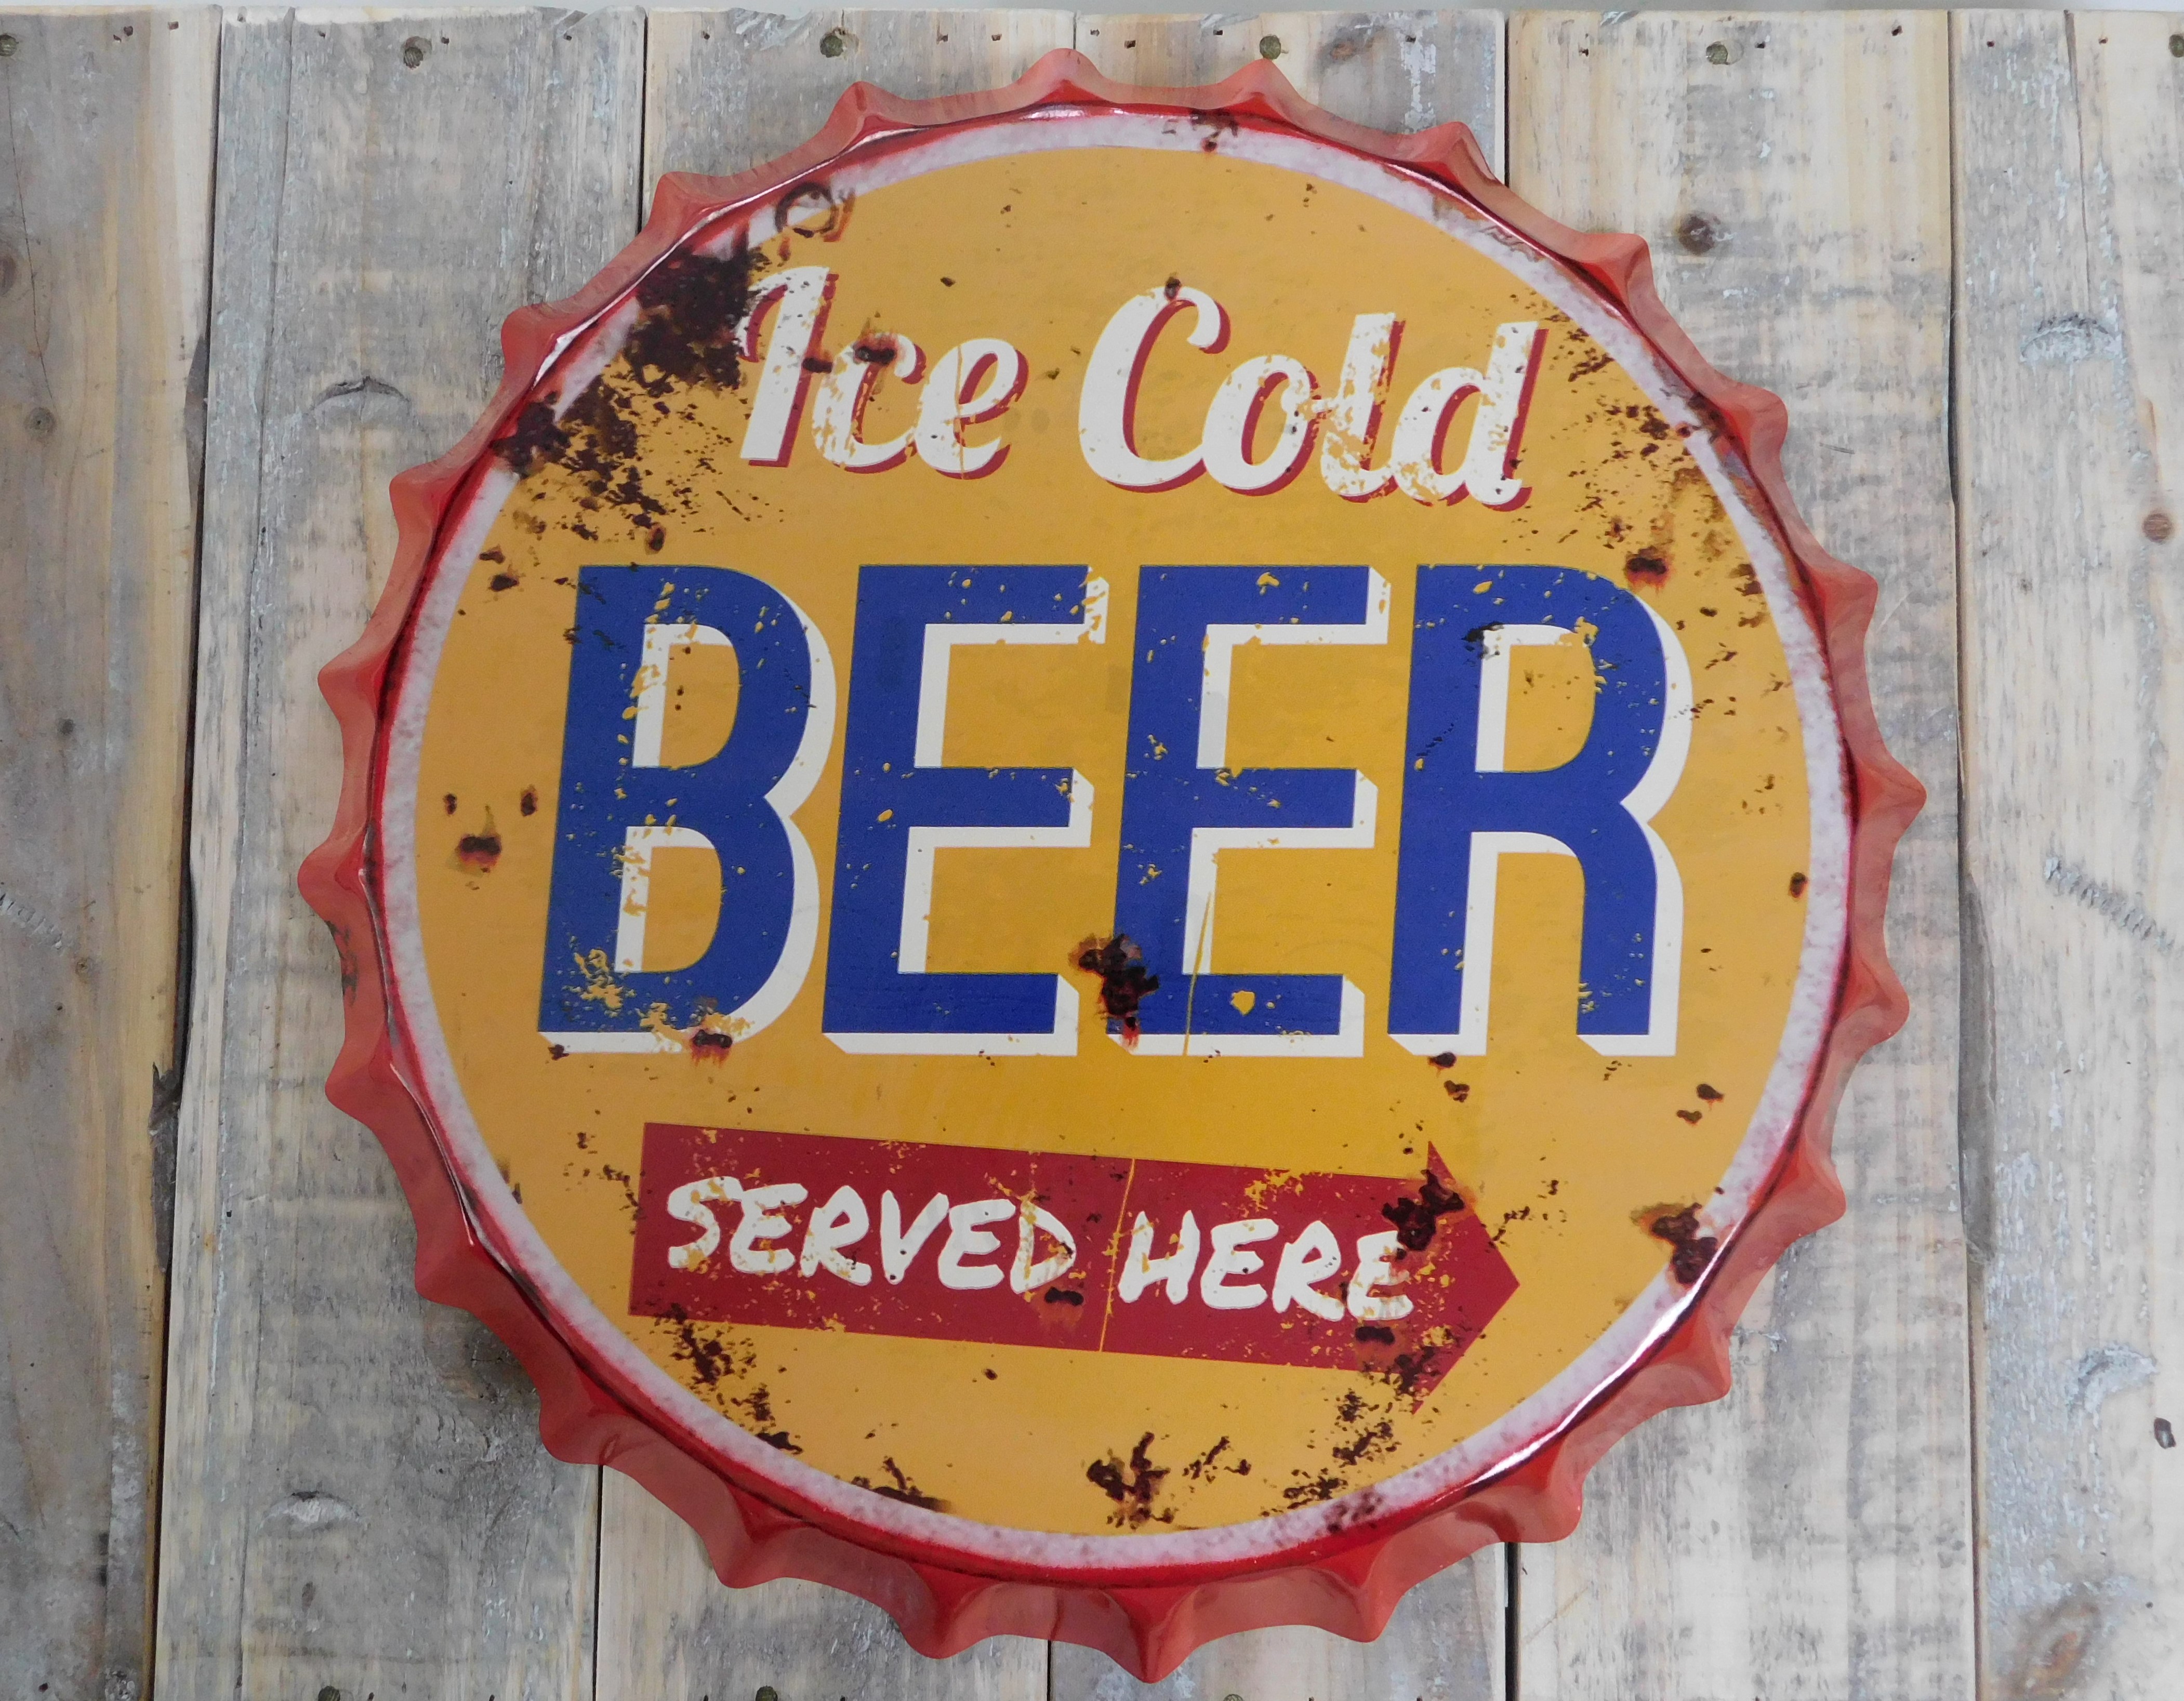 Prachtige metalen kroonkurk met tekst: ice cold beer served here!!